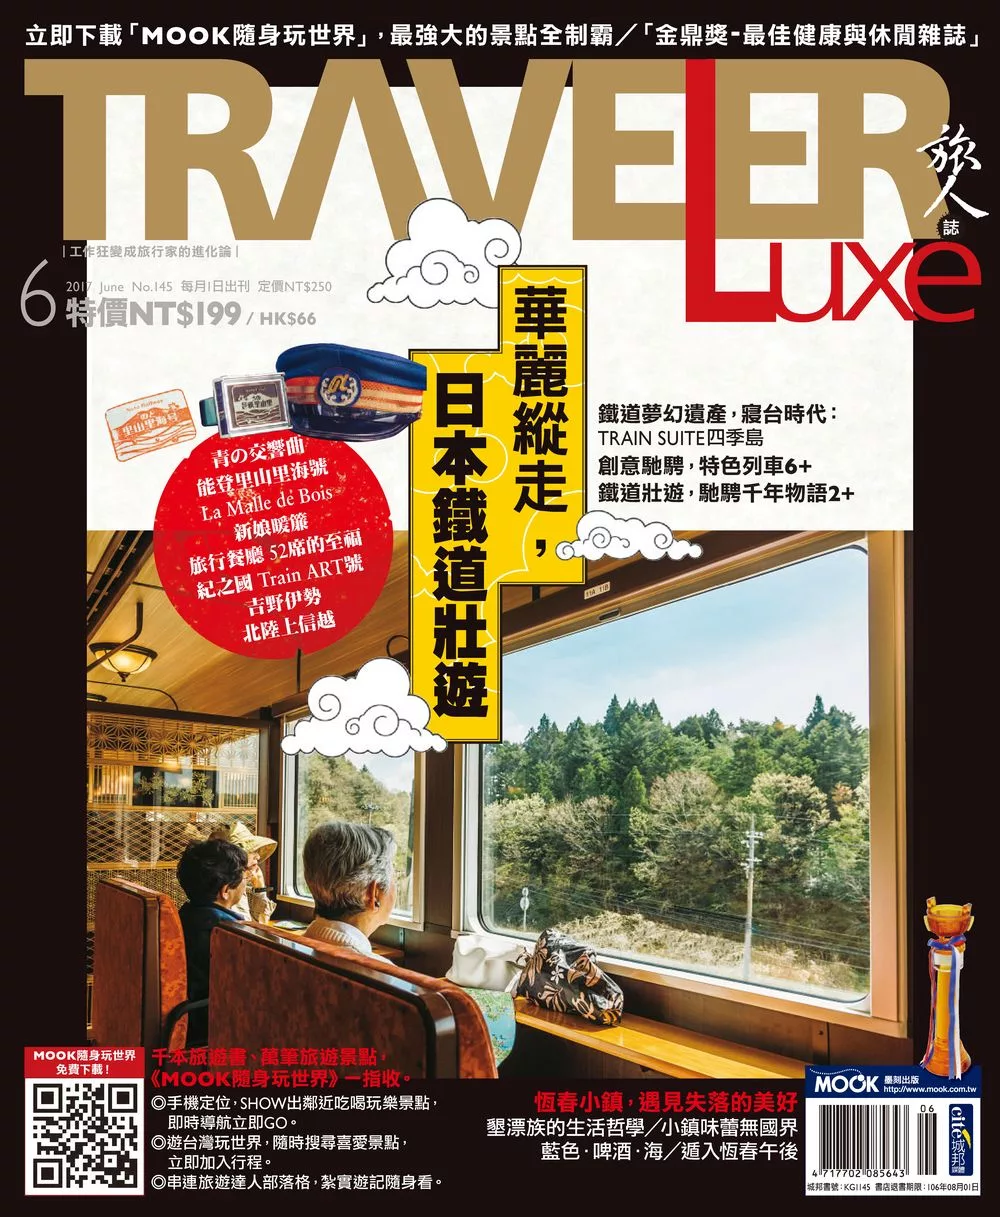 TRAVELER LUXE 旅人誌 06月號/2017第145期 (電子雜誌)